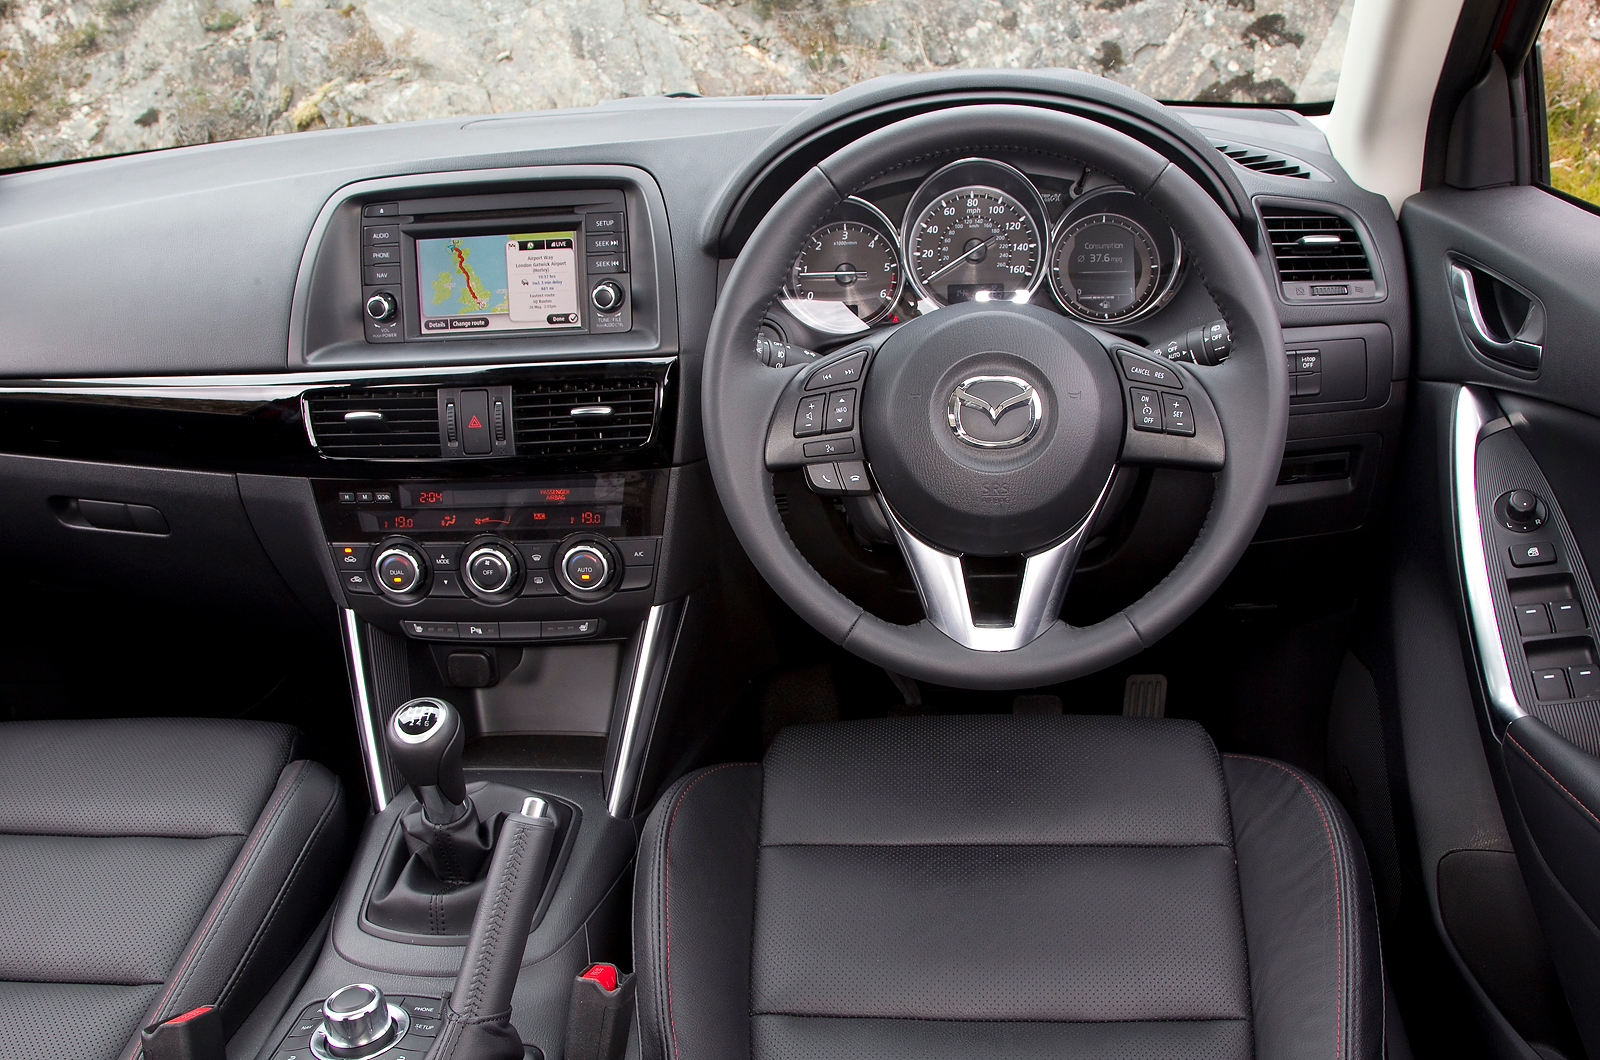 Ролик мазда сх5. Mazda cx5 Interior. Мазда СХ-5 дизель 2013. Стереосистема Мазда CX-5. Mazda CX 5 2013 слот под ключ.